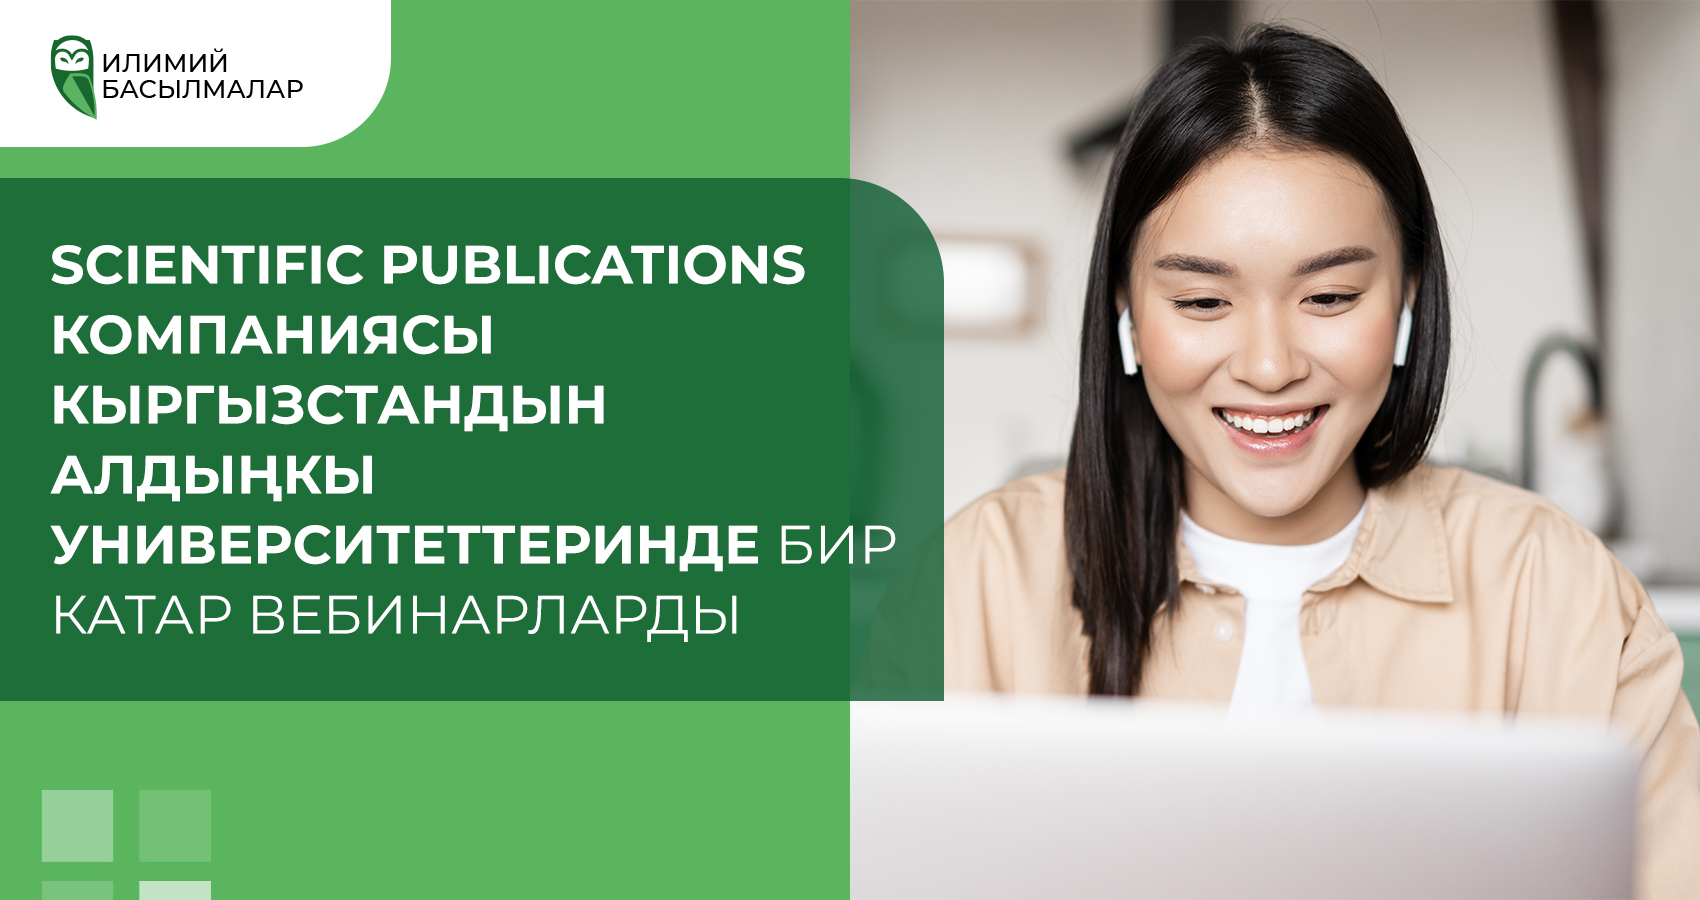 Scientific Publications компаниясы Кыргызстандын алдыңкы университеттеринде бир катар вебинарларды өткөрдү